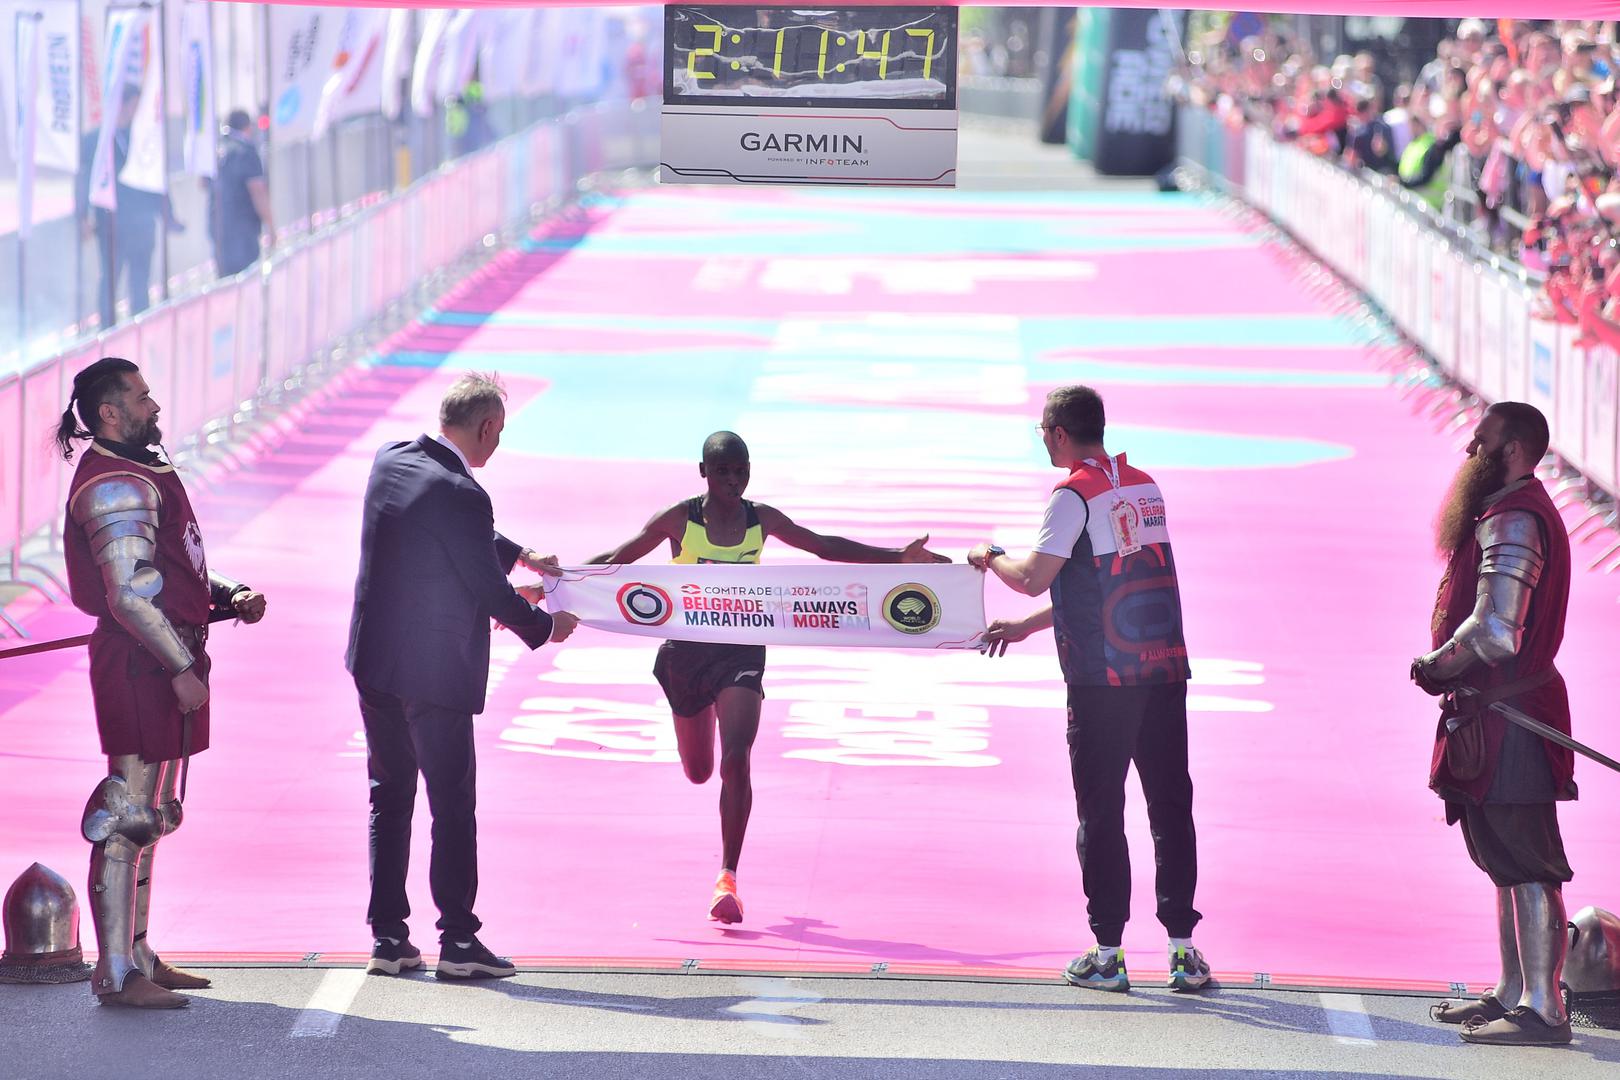 Na beogradskom maratonu sudjelovalo je više od dvije tisuće trkača, a pobjedničko vrijeme na kraju unesrećenog Gilberta bilo je 2:11.47